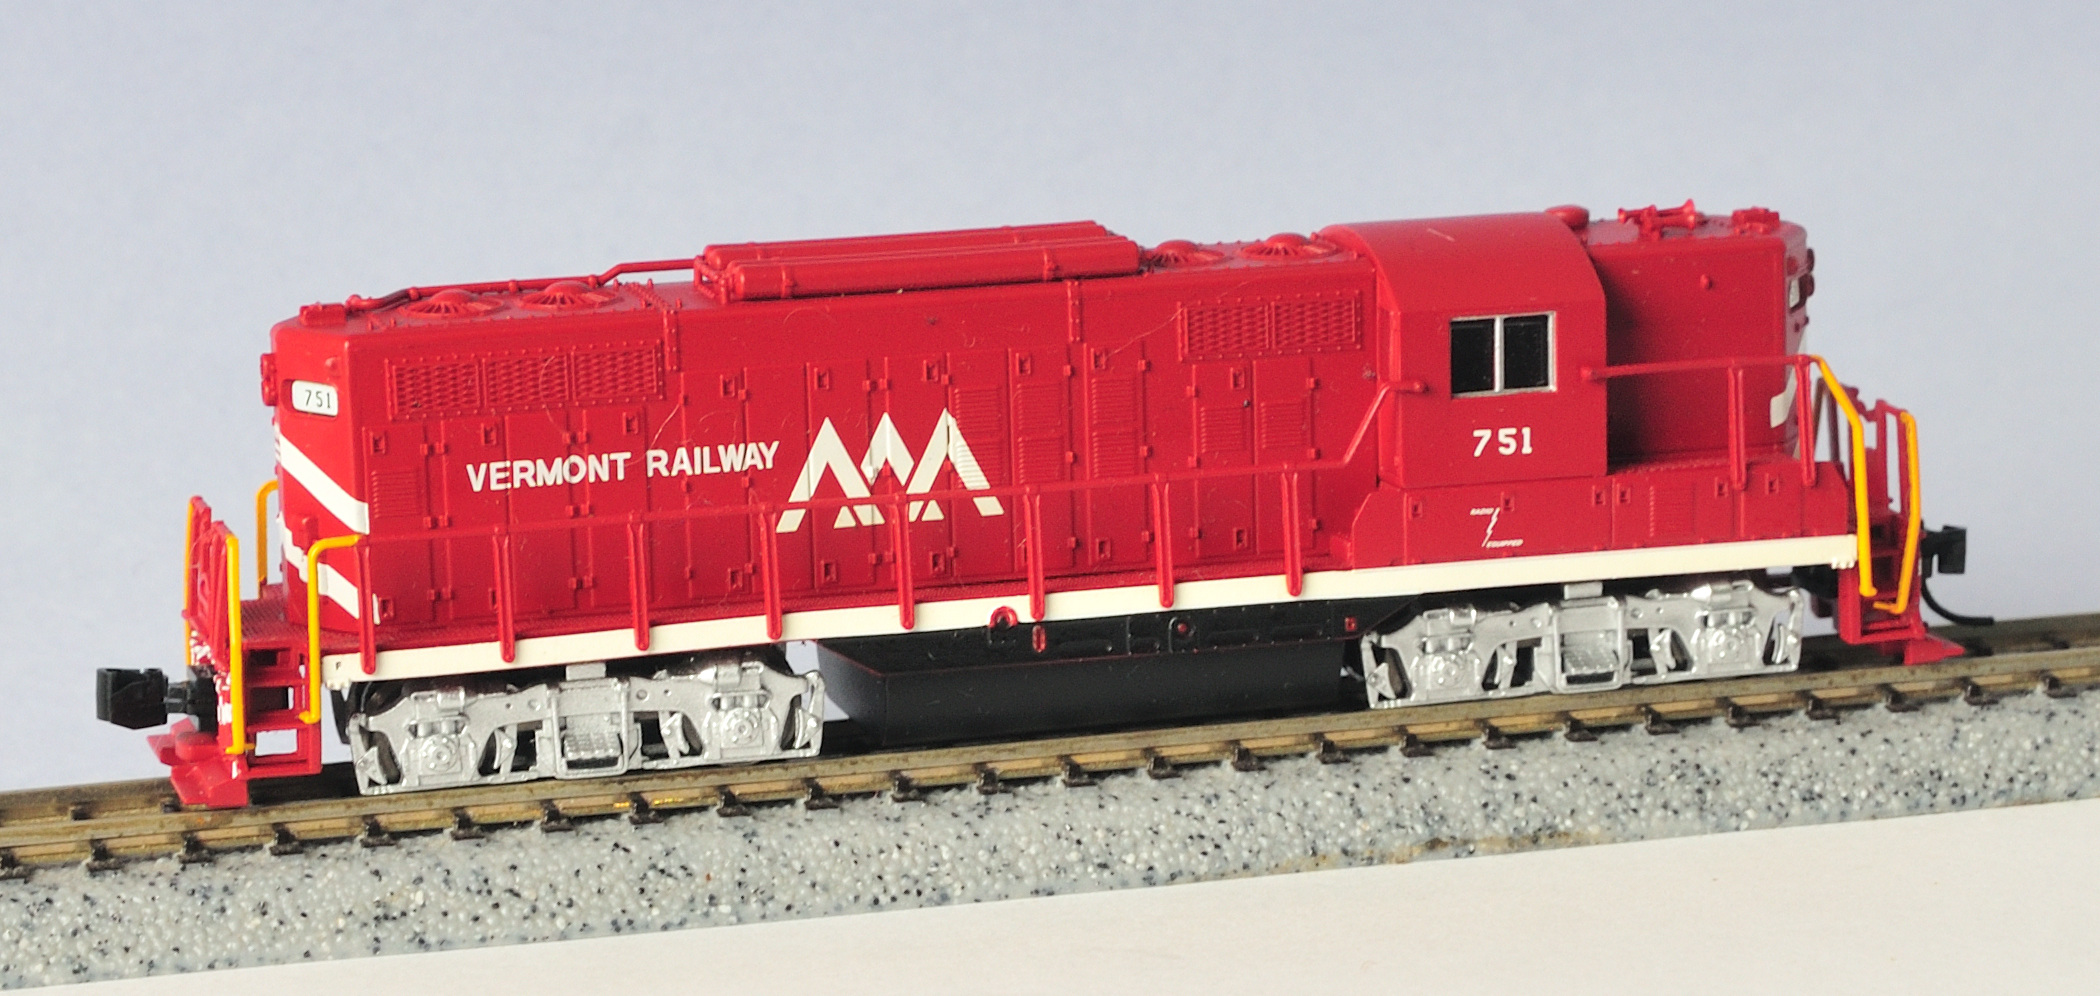 N Scale - Atlas - 40 001 827 - Locomotive, Diesel, EMD GP9 - Vermont Railway - 751